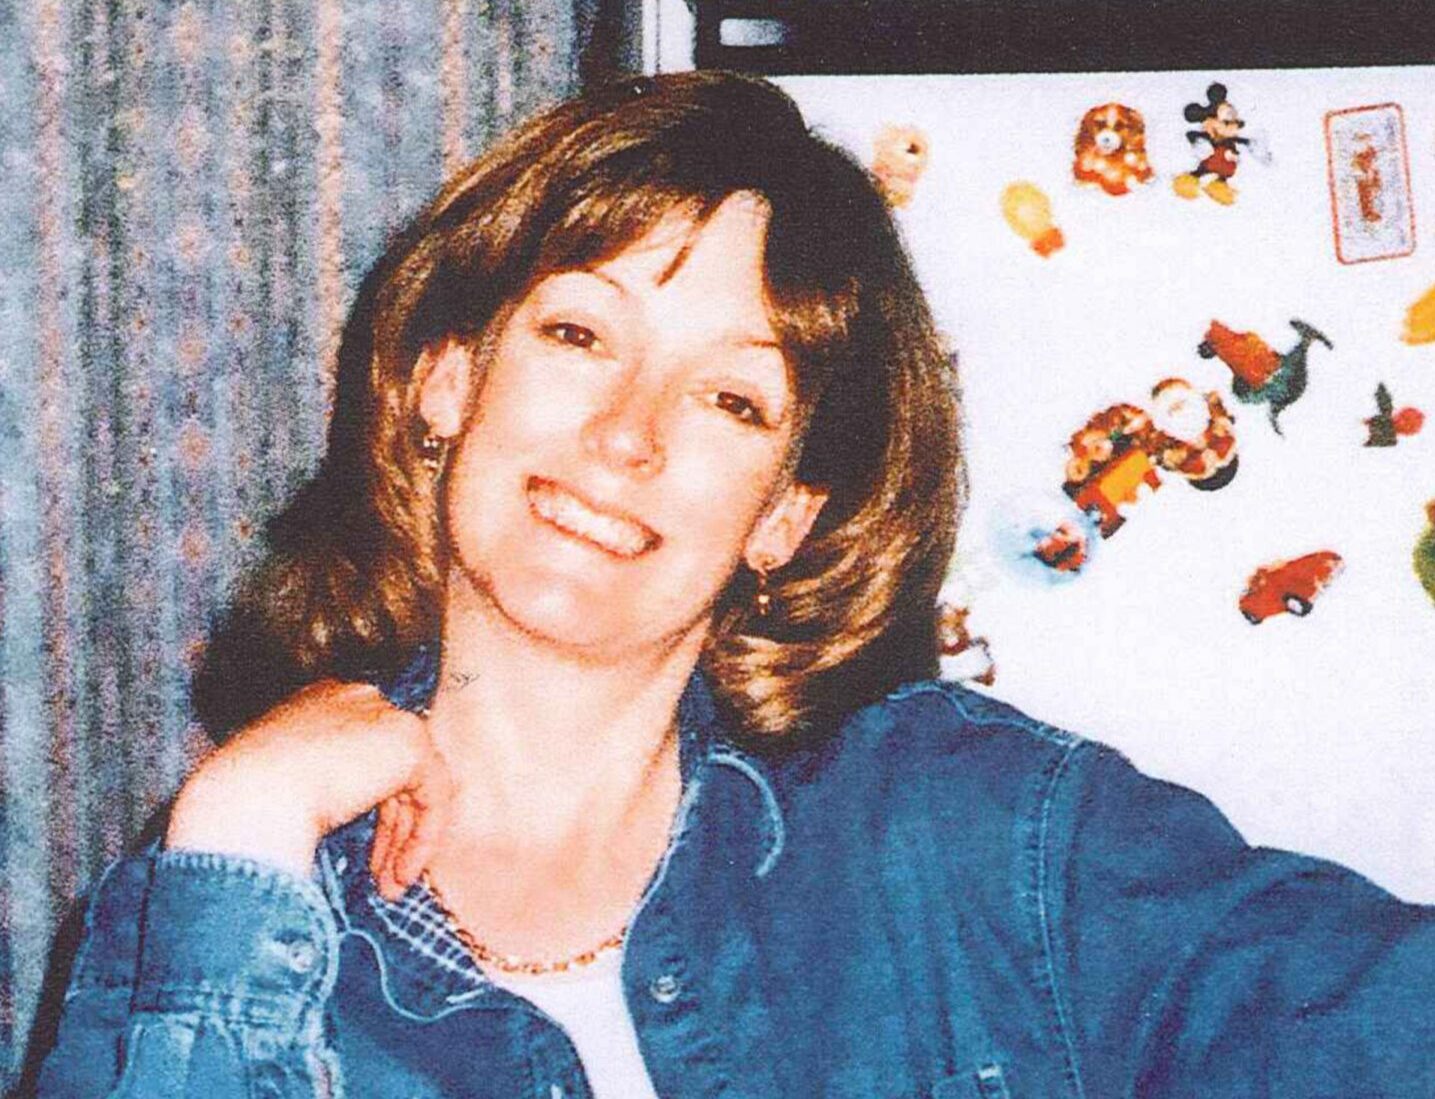 Arlene Fraser who was last seen on April 28, 1998